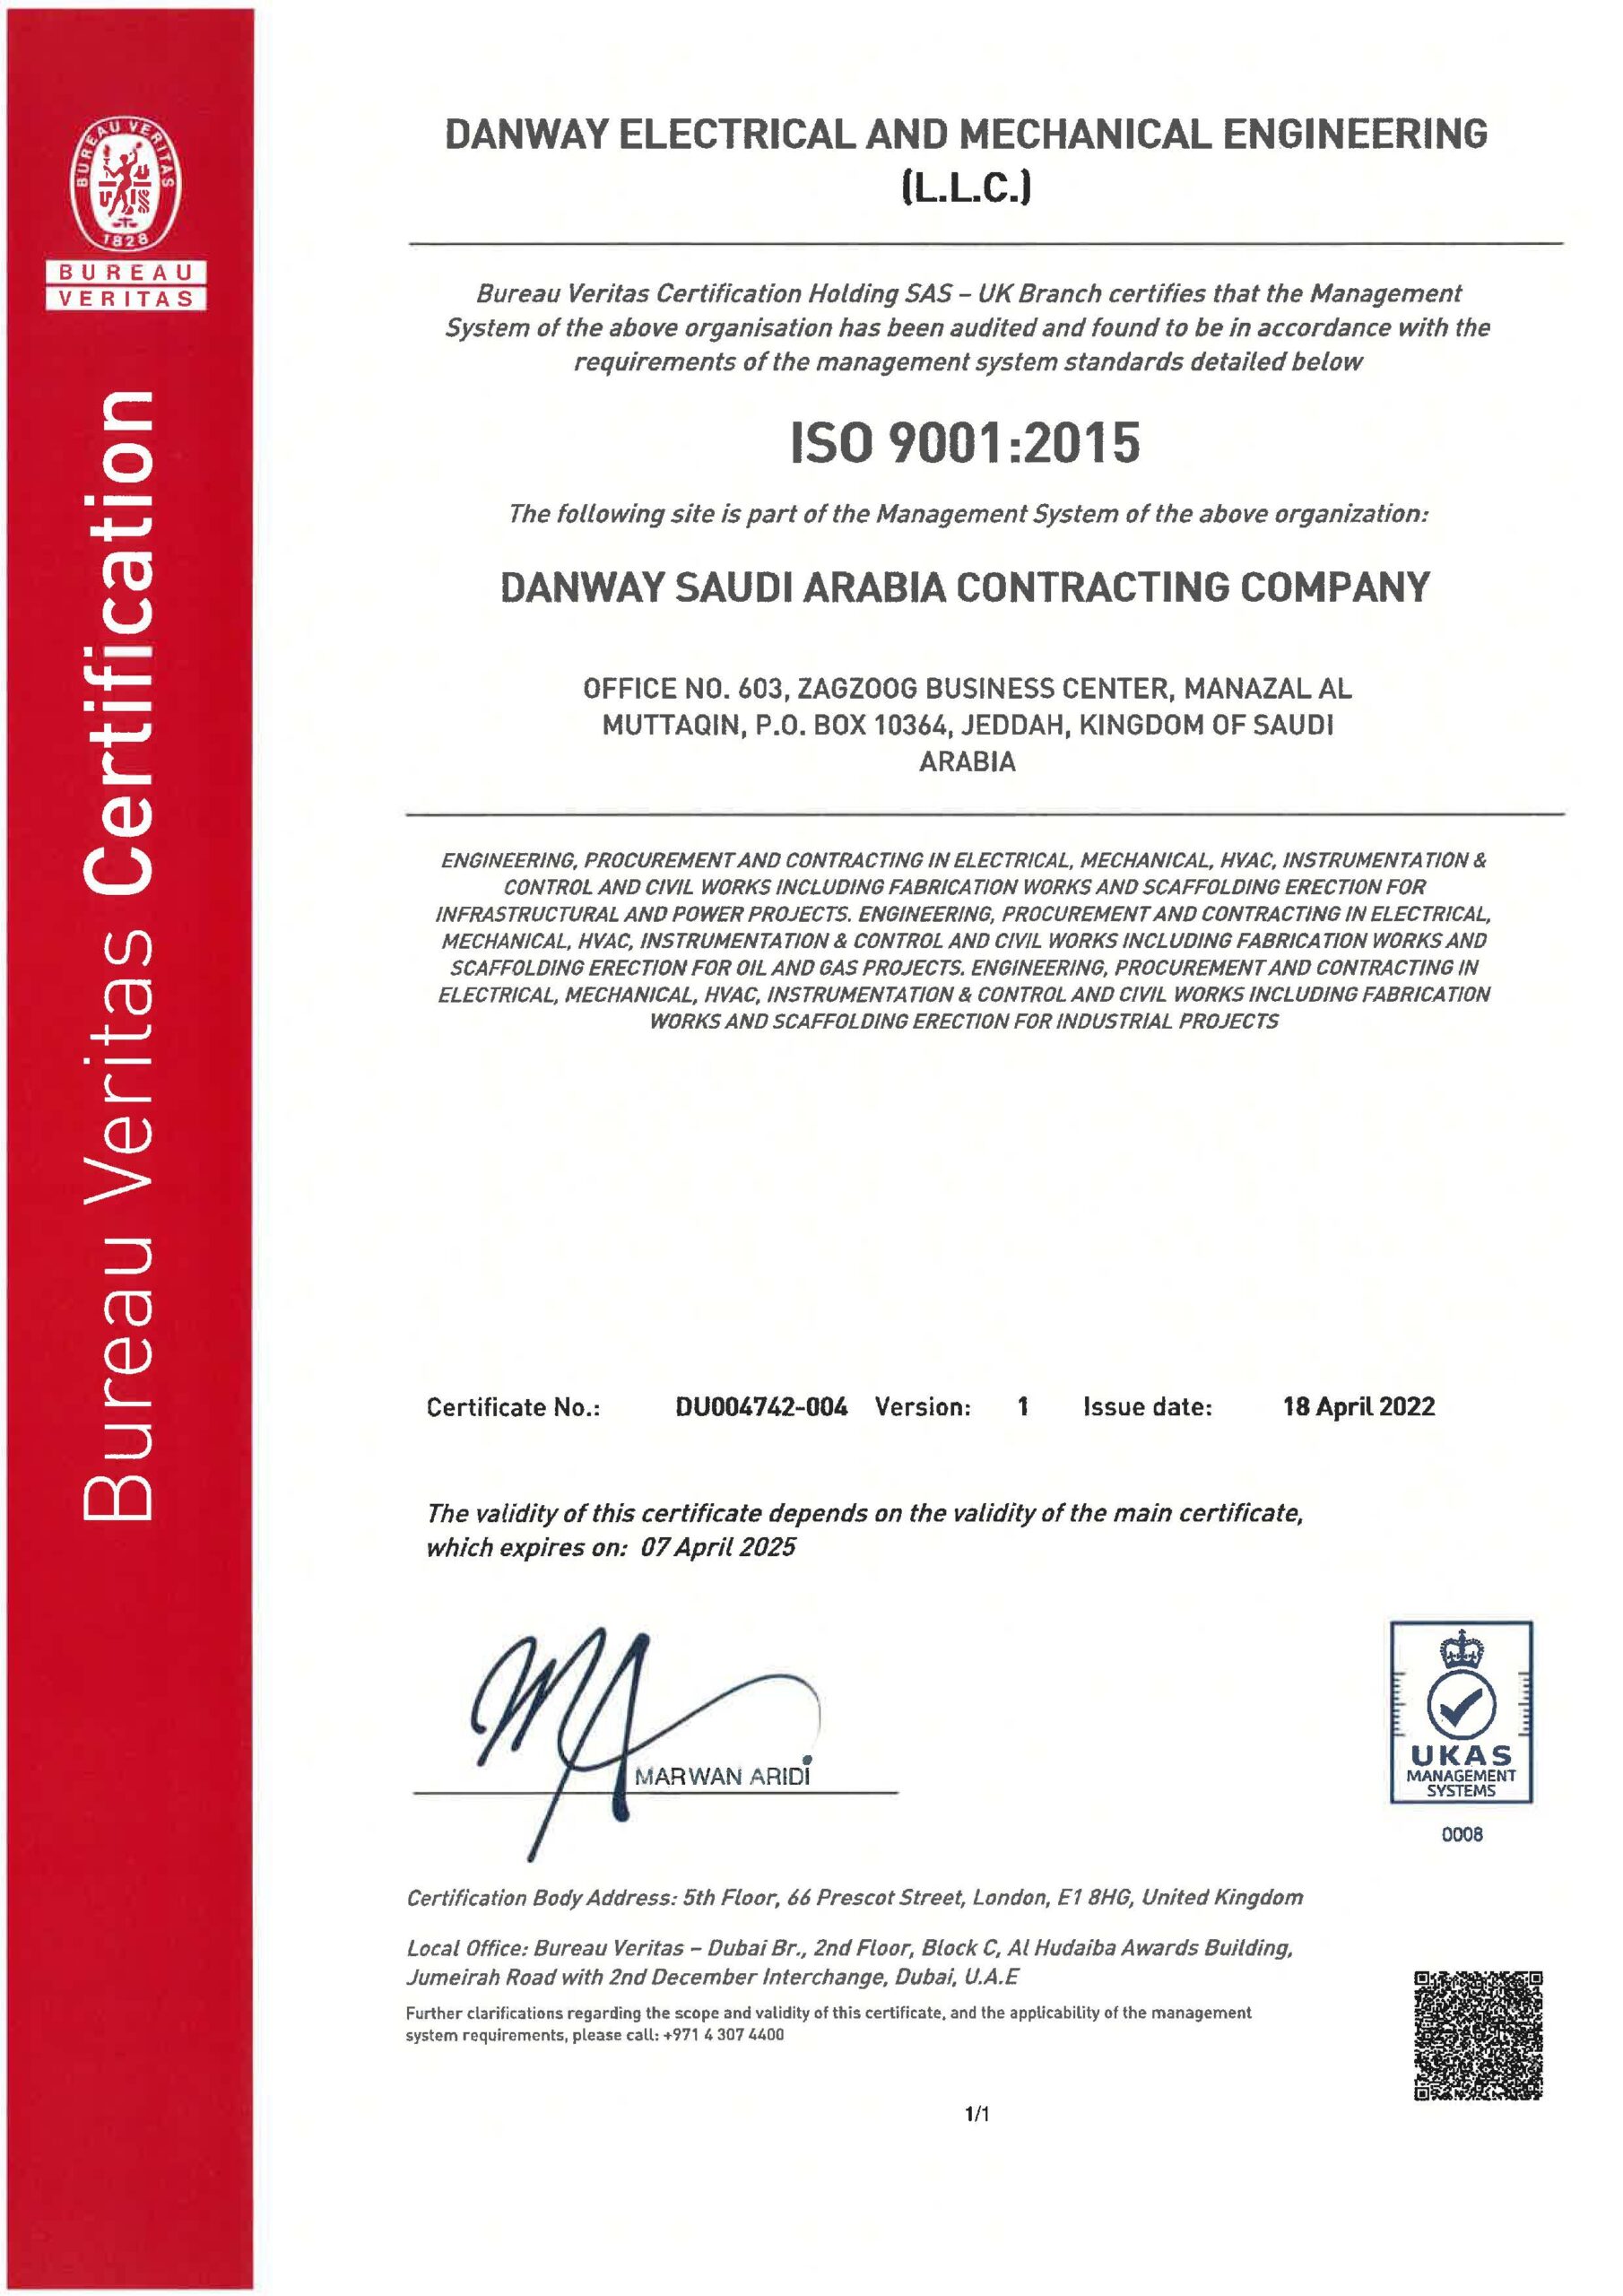 ISO9001:2015 Danway EME, KSA